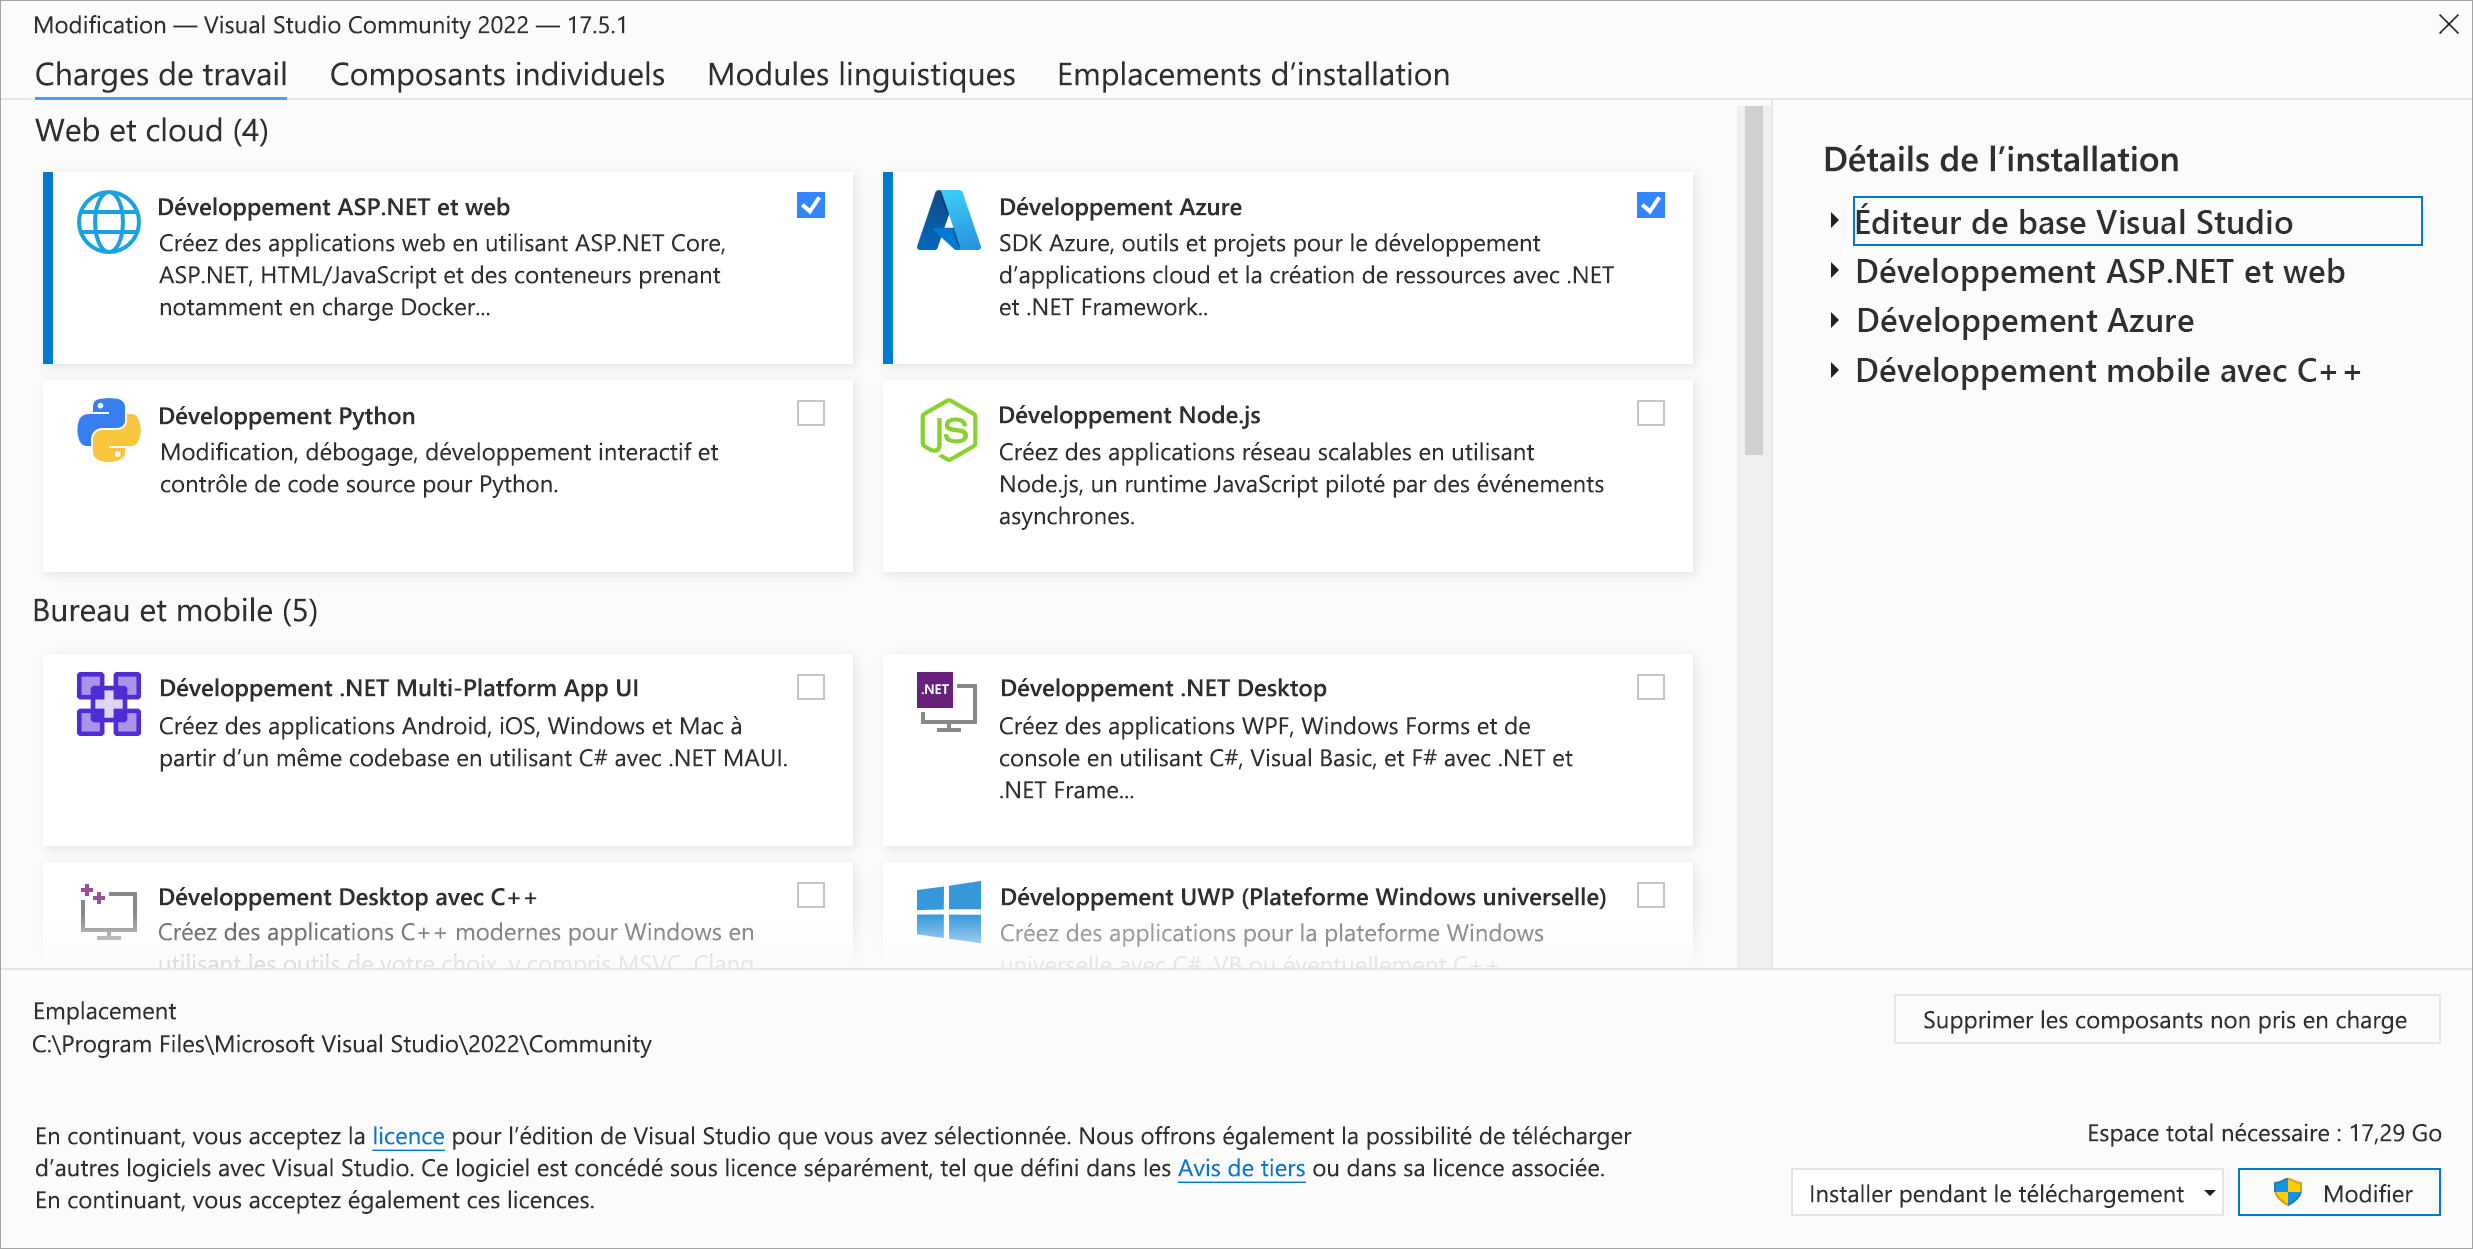 Capture d’écran de l’onglet Modification des charges de travail Visual Studio Community 2022 avec le développement ASP.NET et web, et le développement Azure en surbrillance.